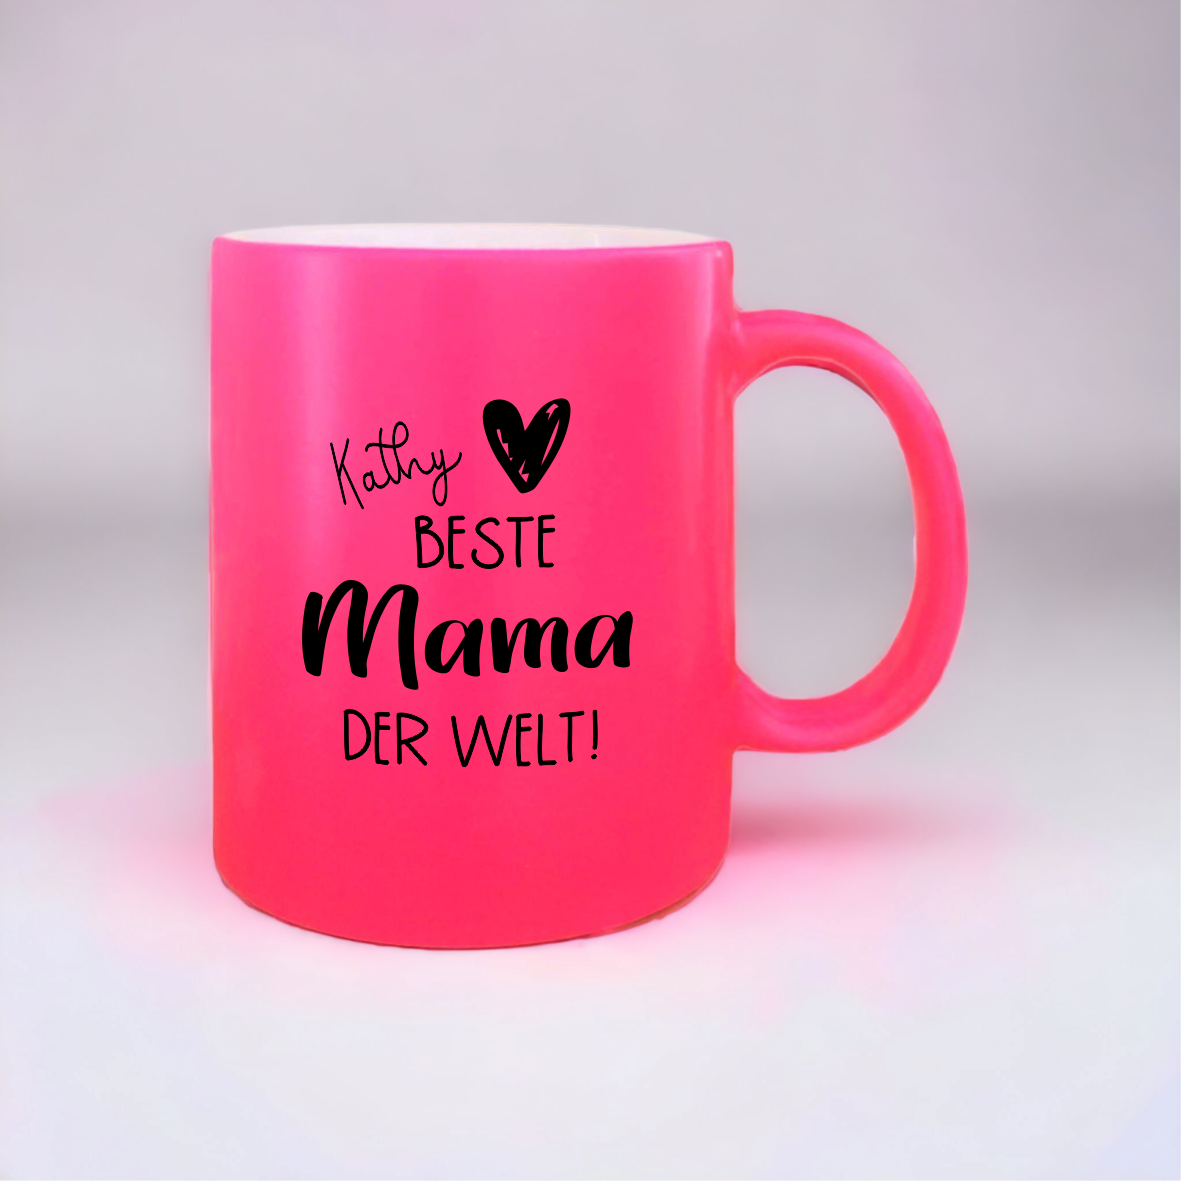 NEON Tasse "Beste Mama der Welt", pink mit Wunschnamen